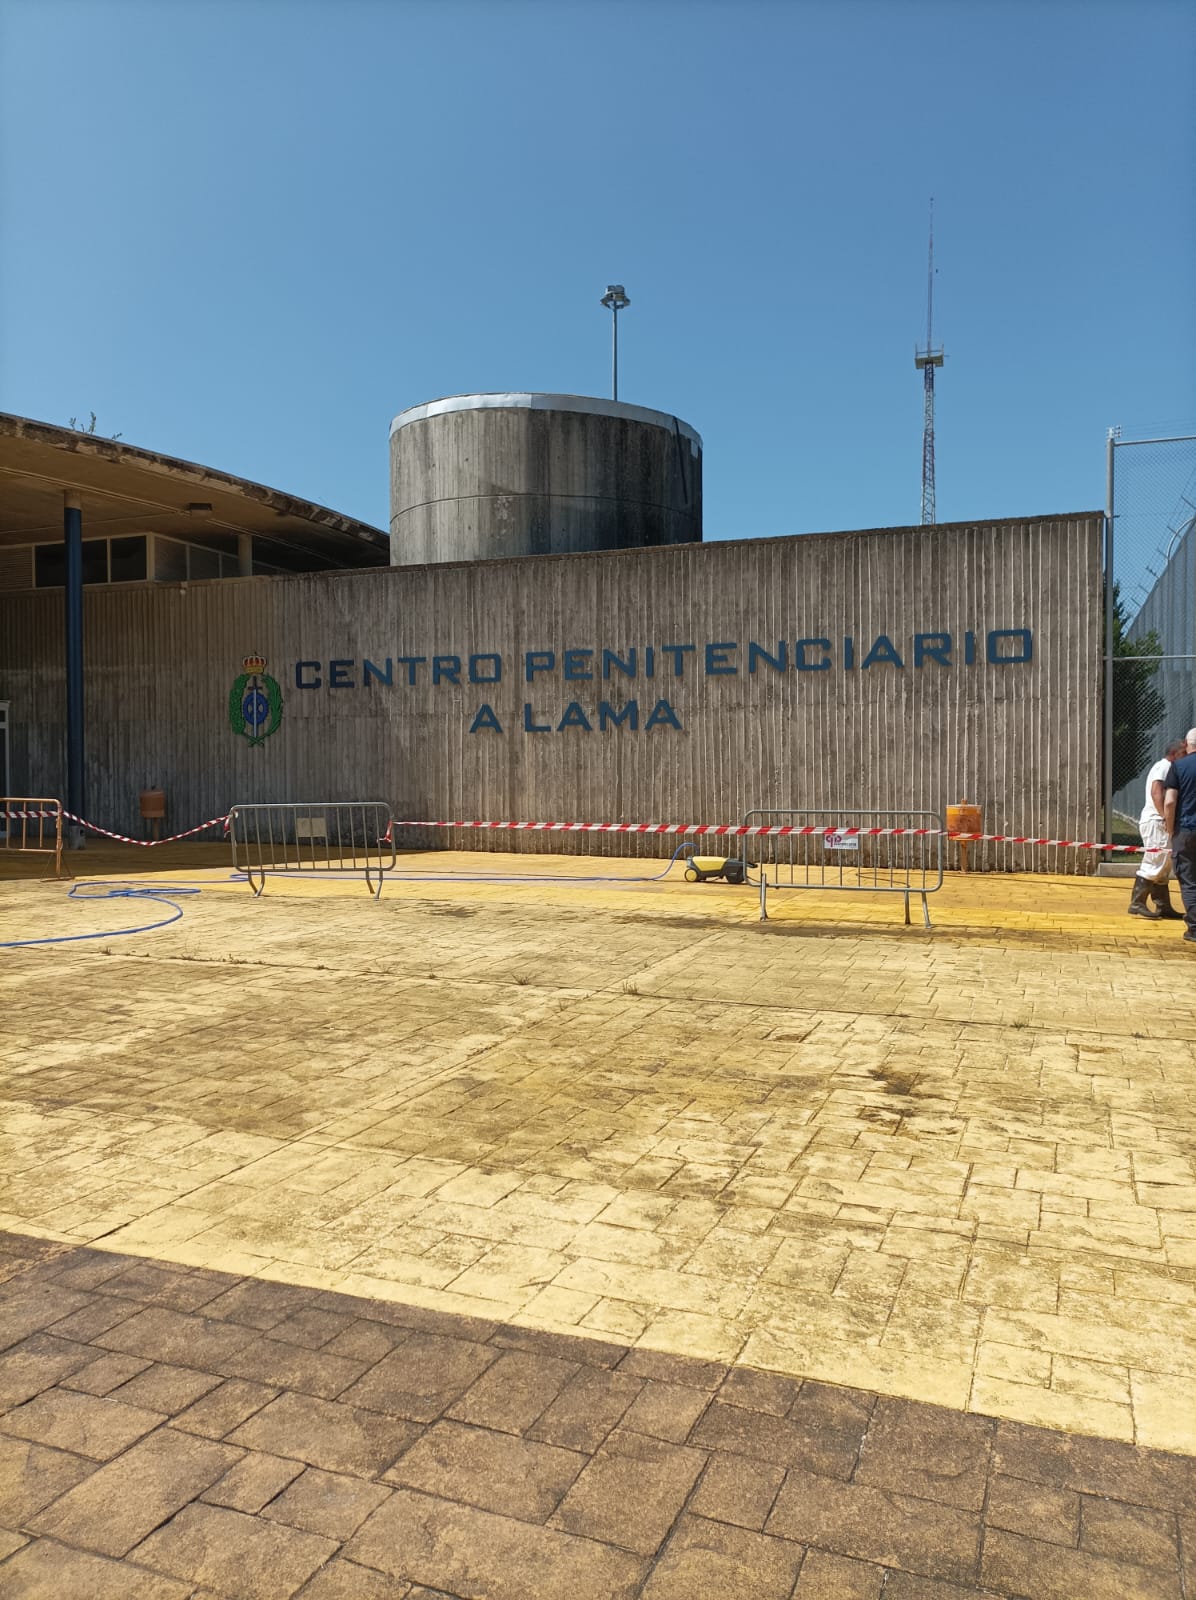 Termina el programa Escuela de Familia en el Centro Penitenciario A Lama (Pontevedra)